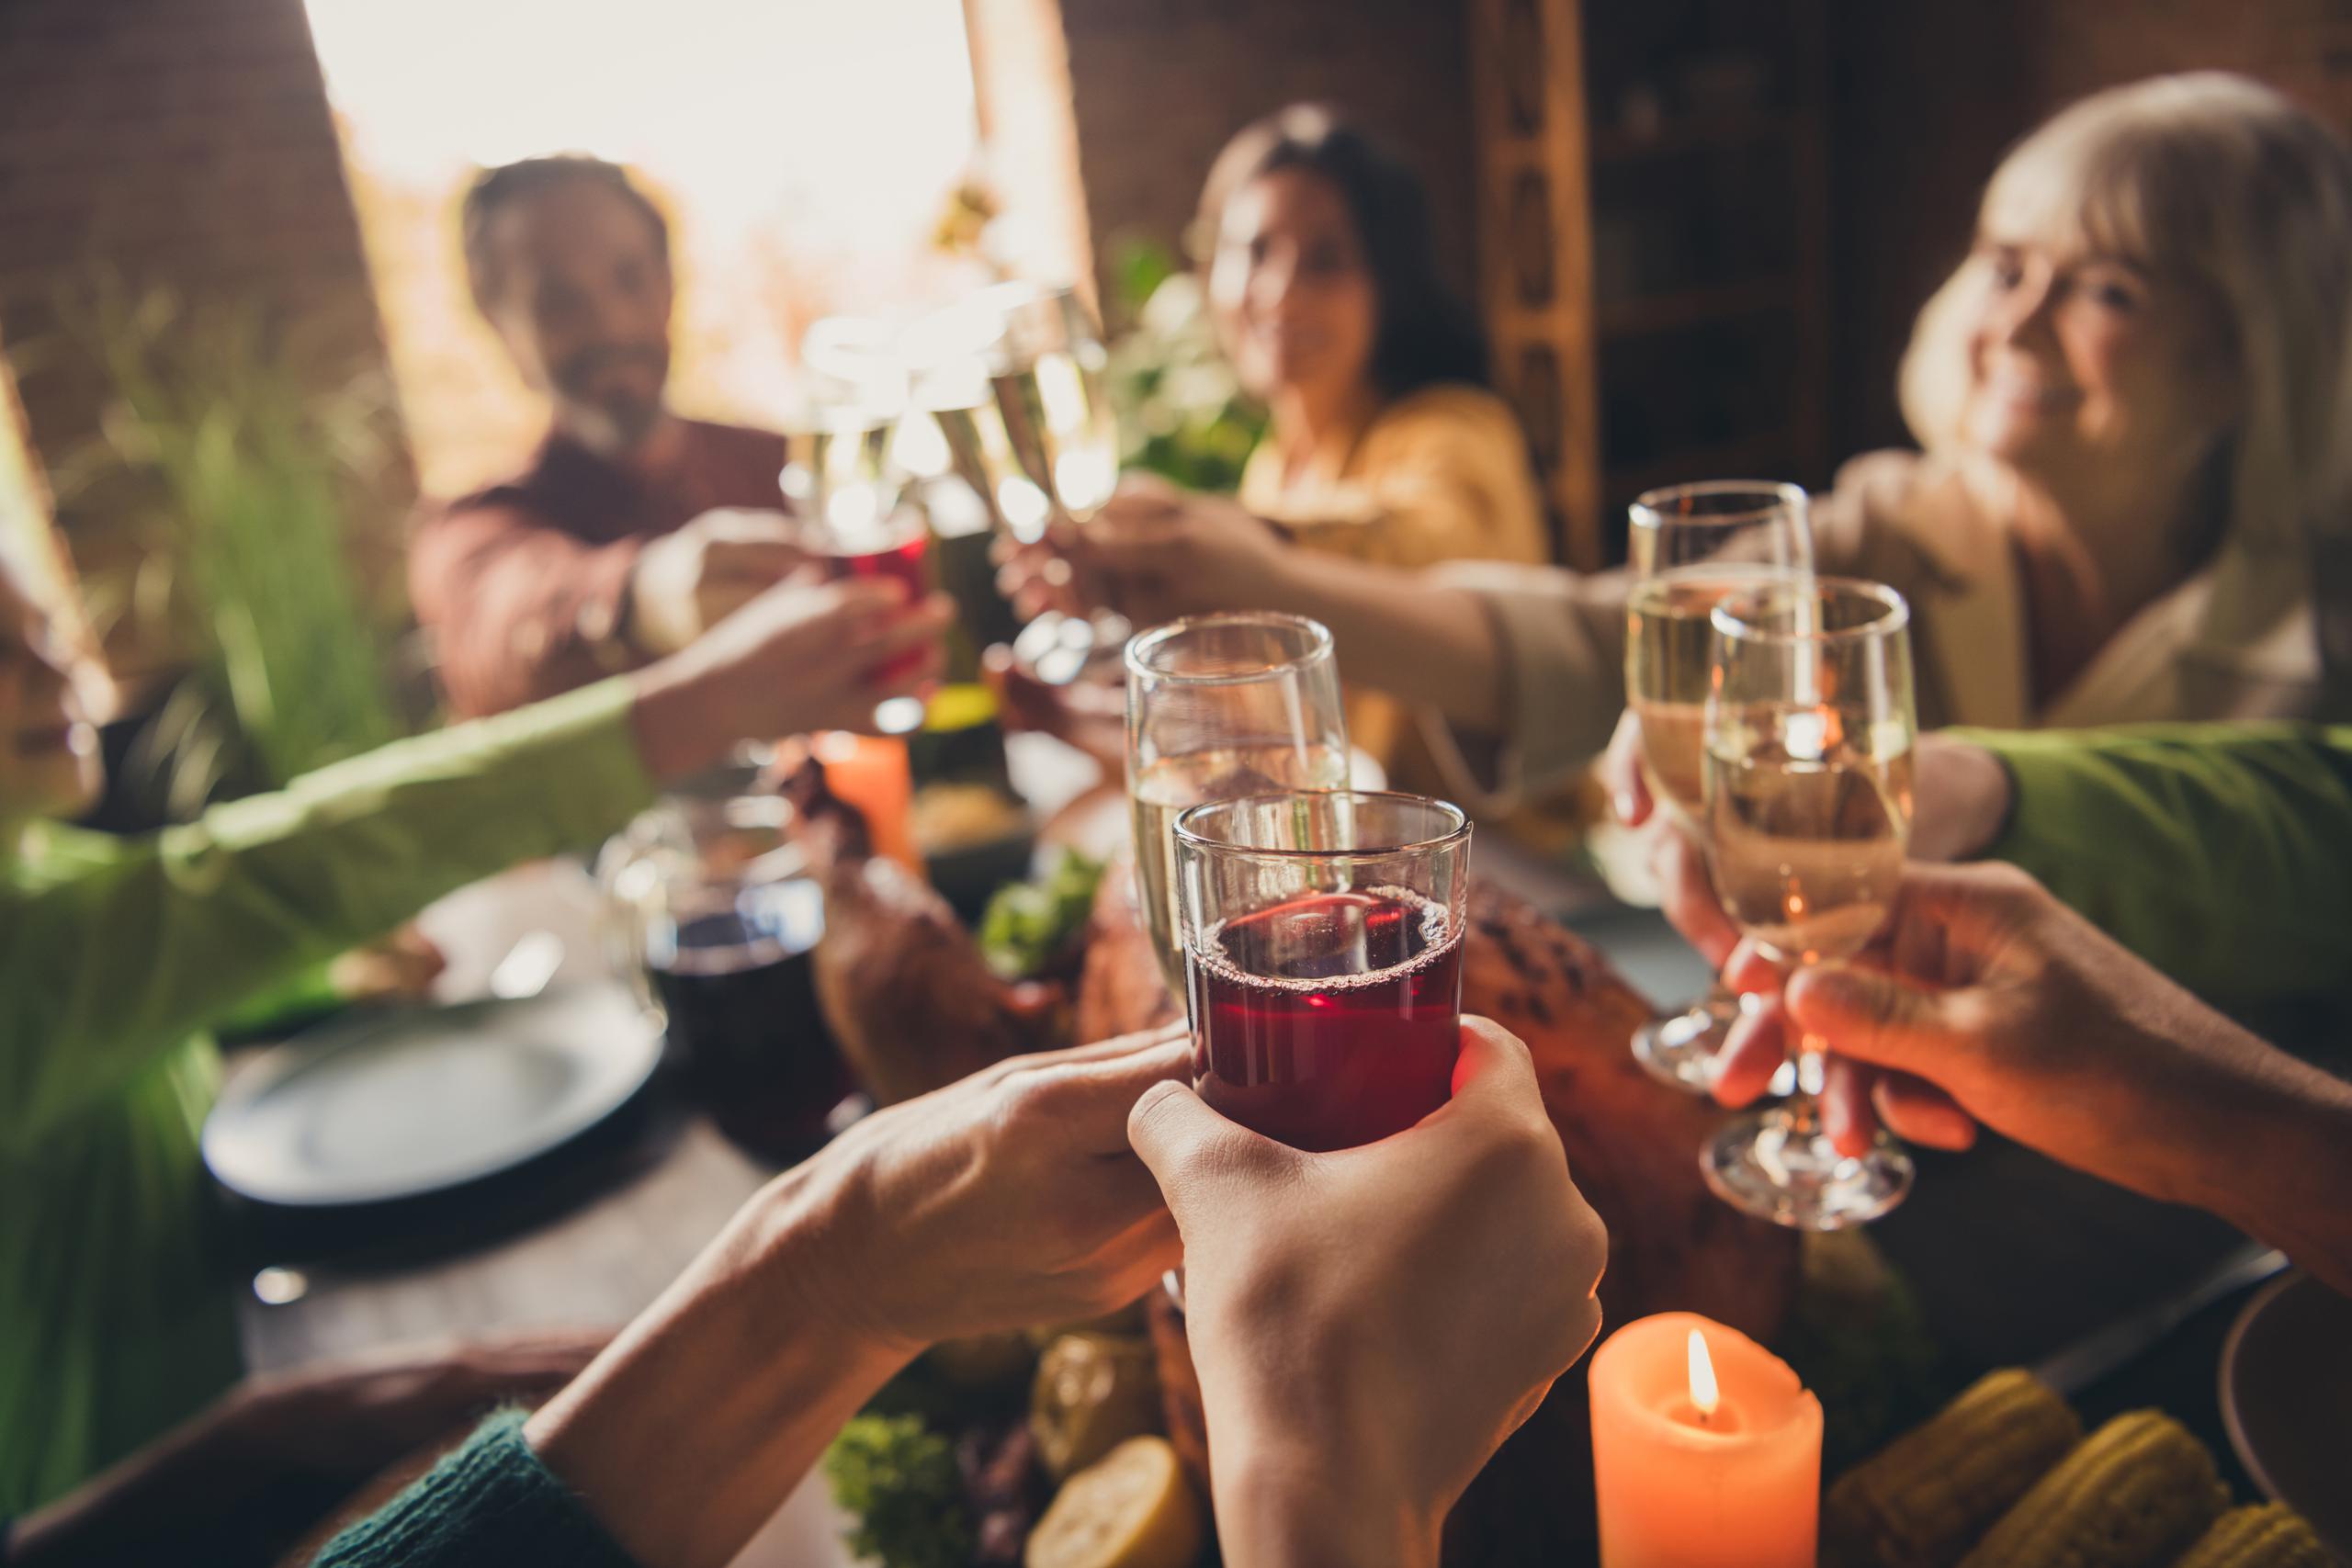 Además de tener en cuenta la moderación al momento de comer, ser comedido con la ingesta de bebidas alcohólicas es vital para la seguridad de los invitados.